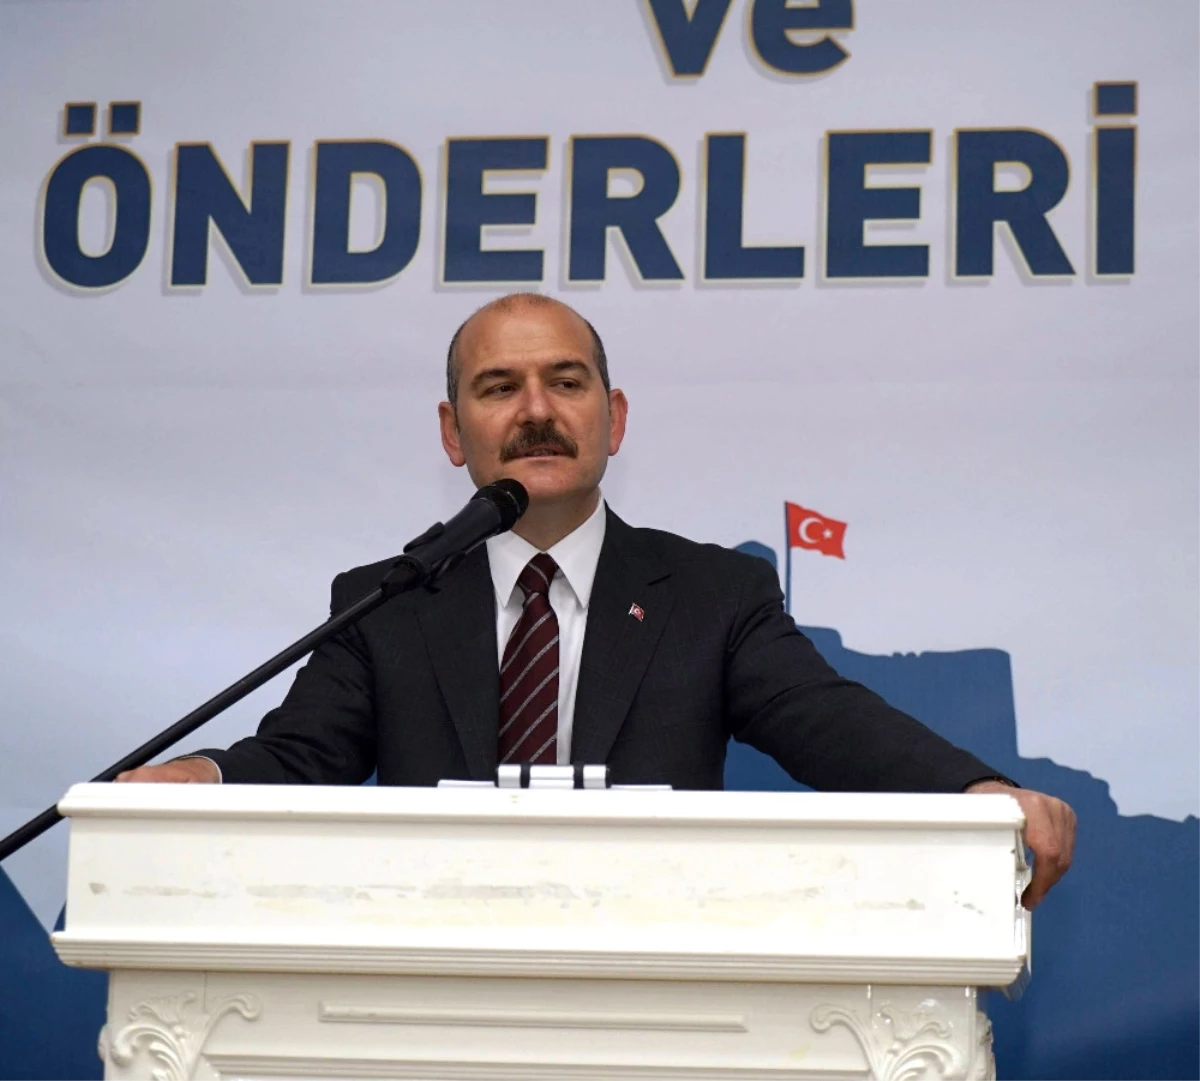 300 Yıl Sonrasına Güçlü Bir Türkiye Oluşturmak Ile Mükellefiz"